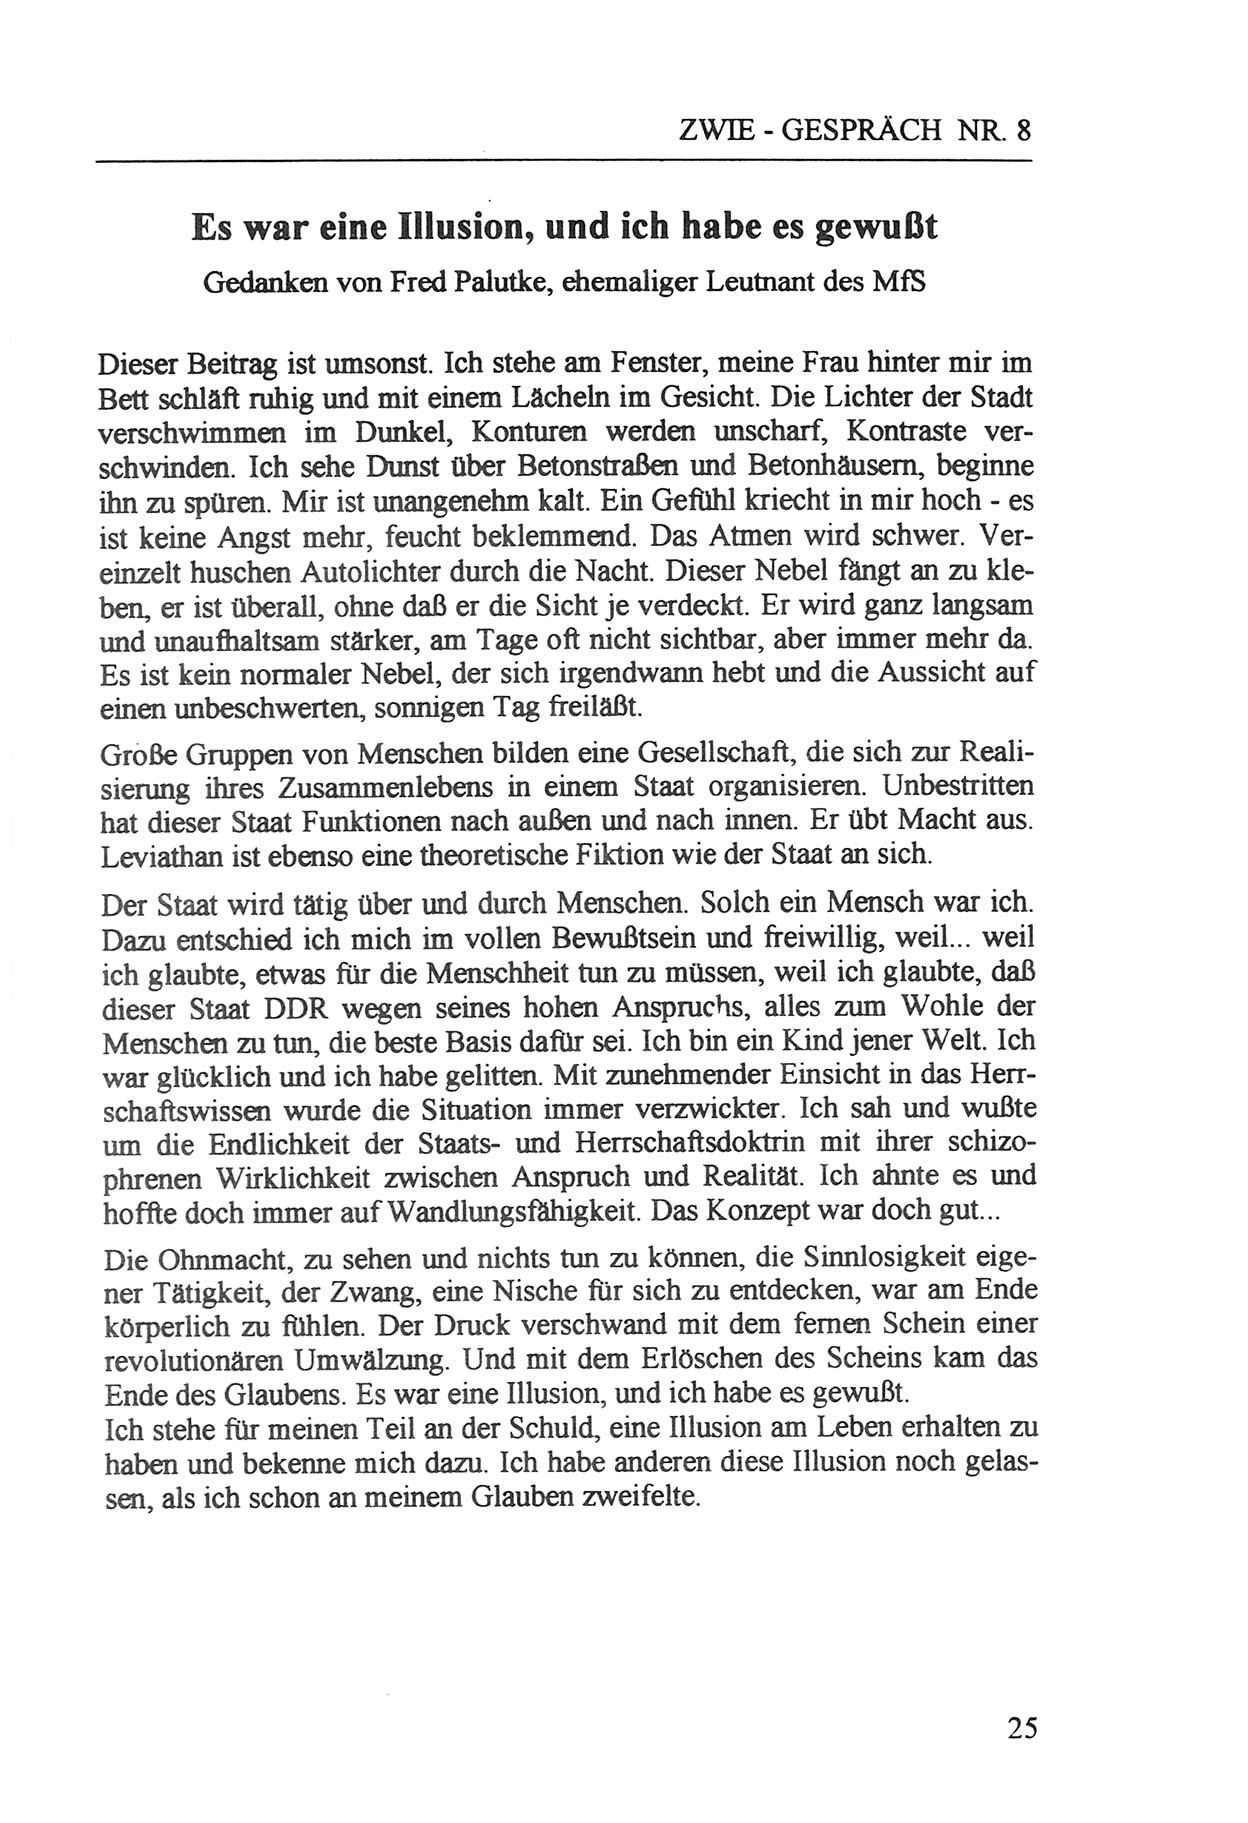 Zwie-Gespräch, Beiträge zur Aufarbeitung der Staatssicherheits-Vergangenheit [Deutsche Demokratische Republik (DDR)], Ausgabe Nr. 8, Berlin 1992, Seite 25 (Zwie-Gespr. Ausg. 8 1992, S. 25)